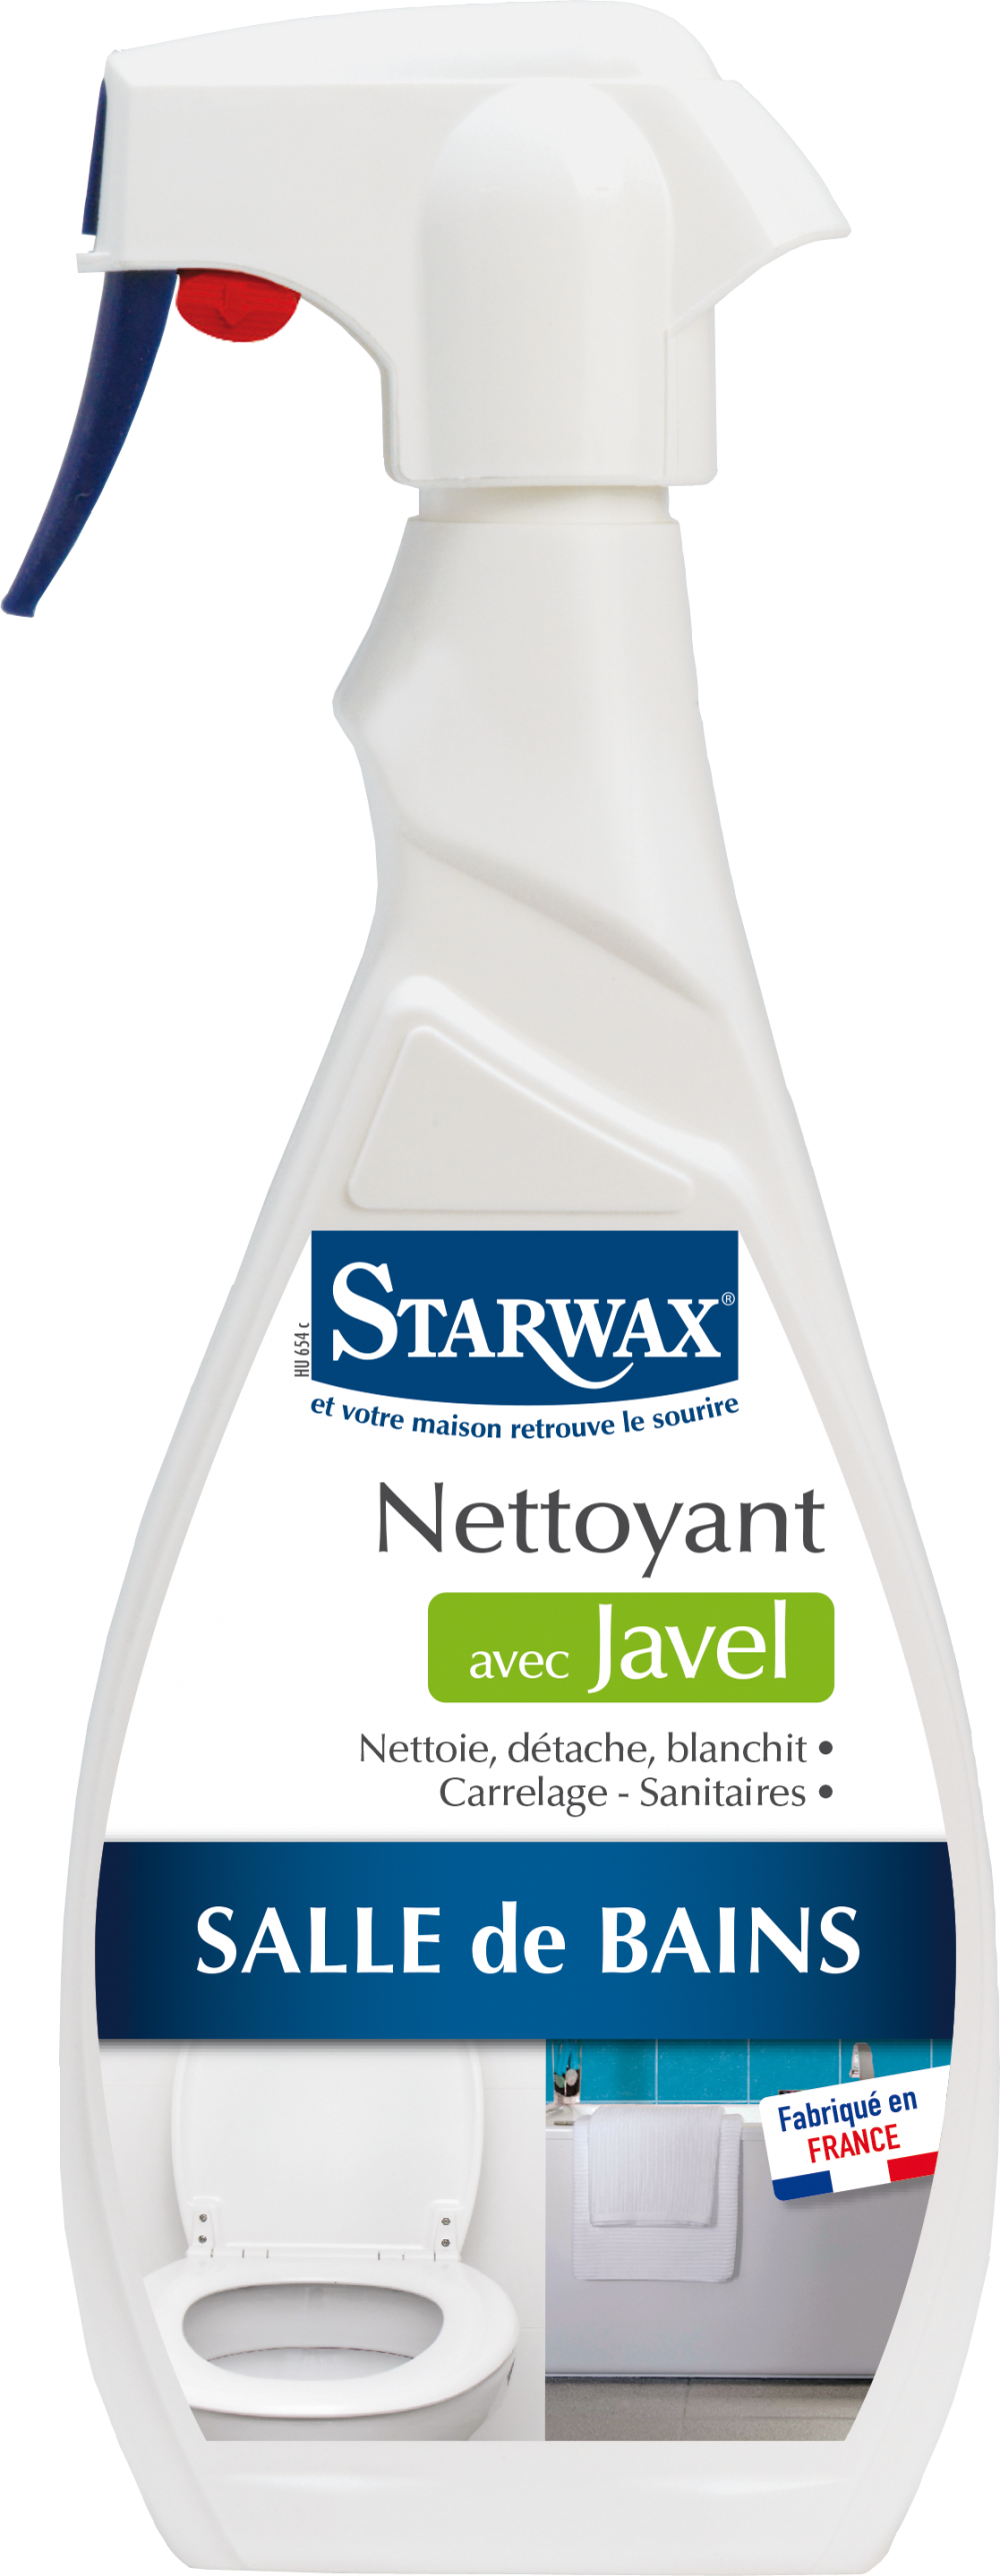 Starwax Nettoyant javel STARWAX 0.5 l pas cher 